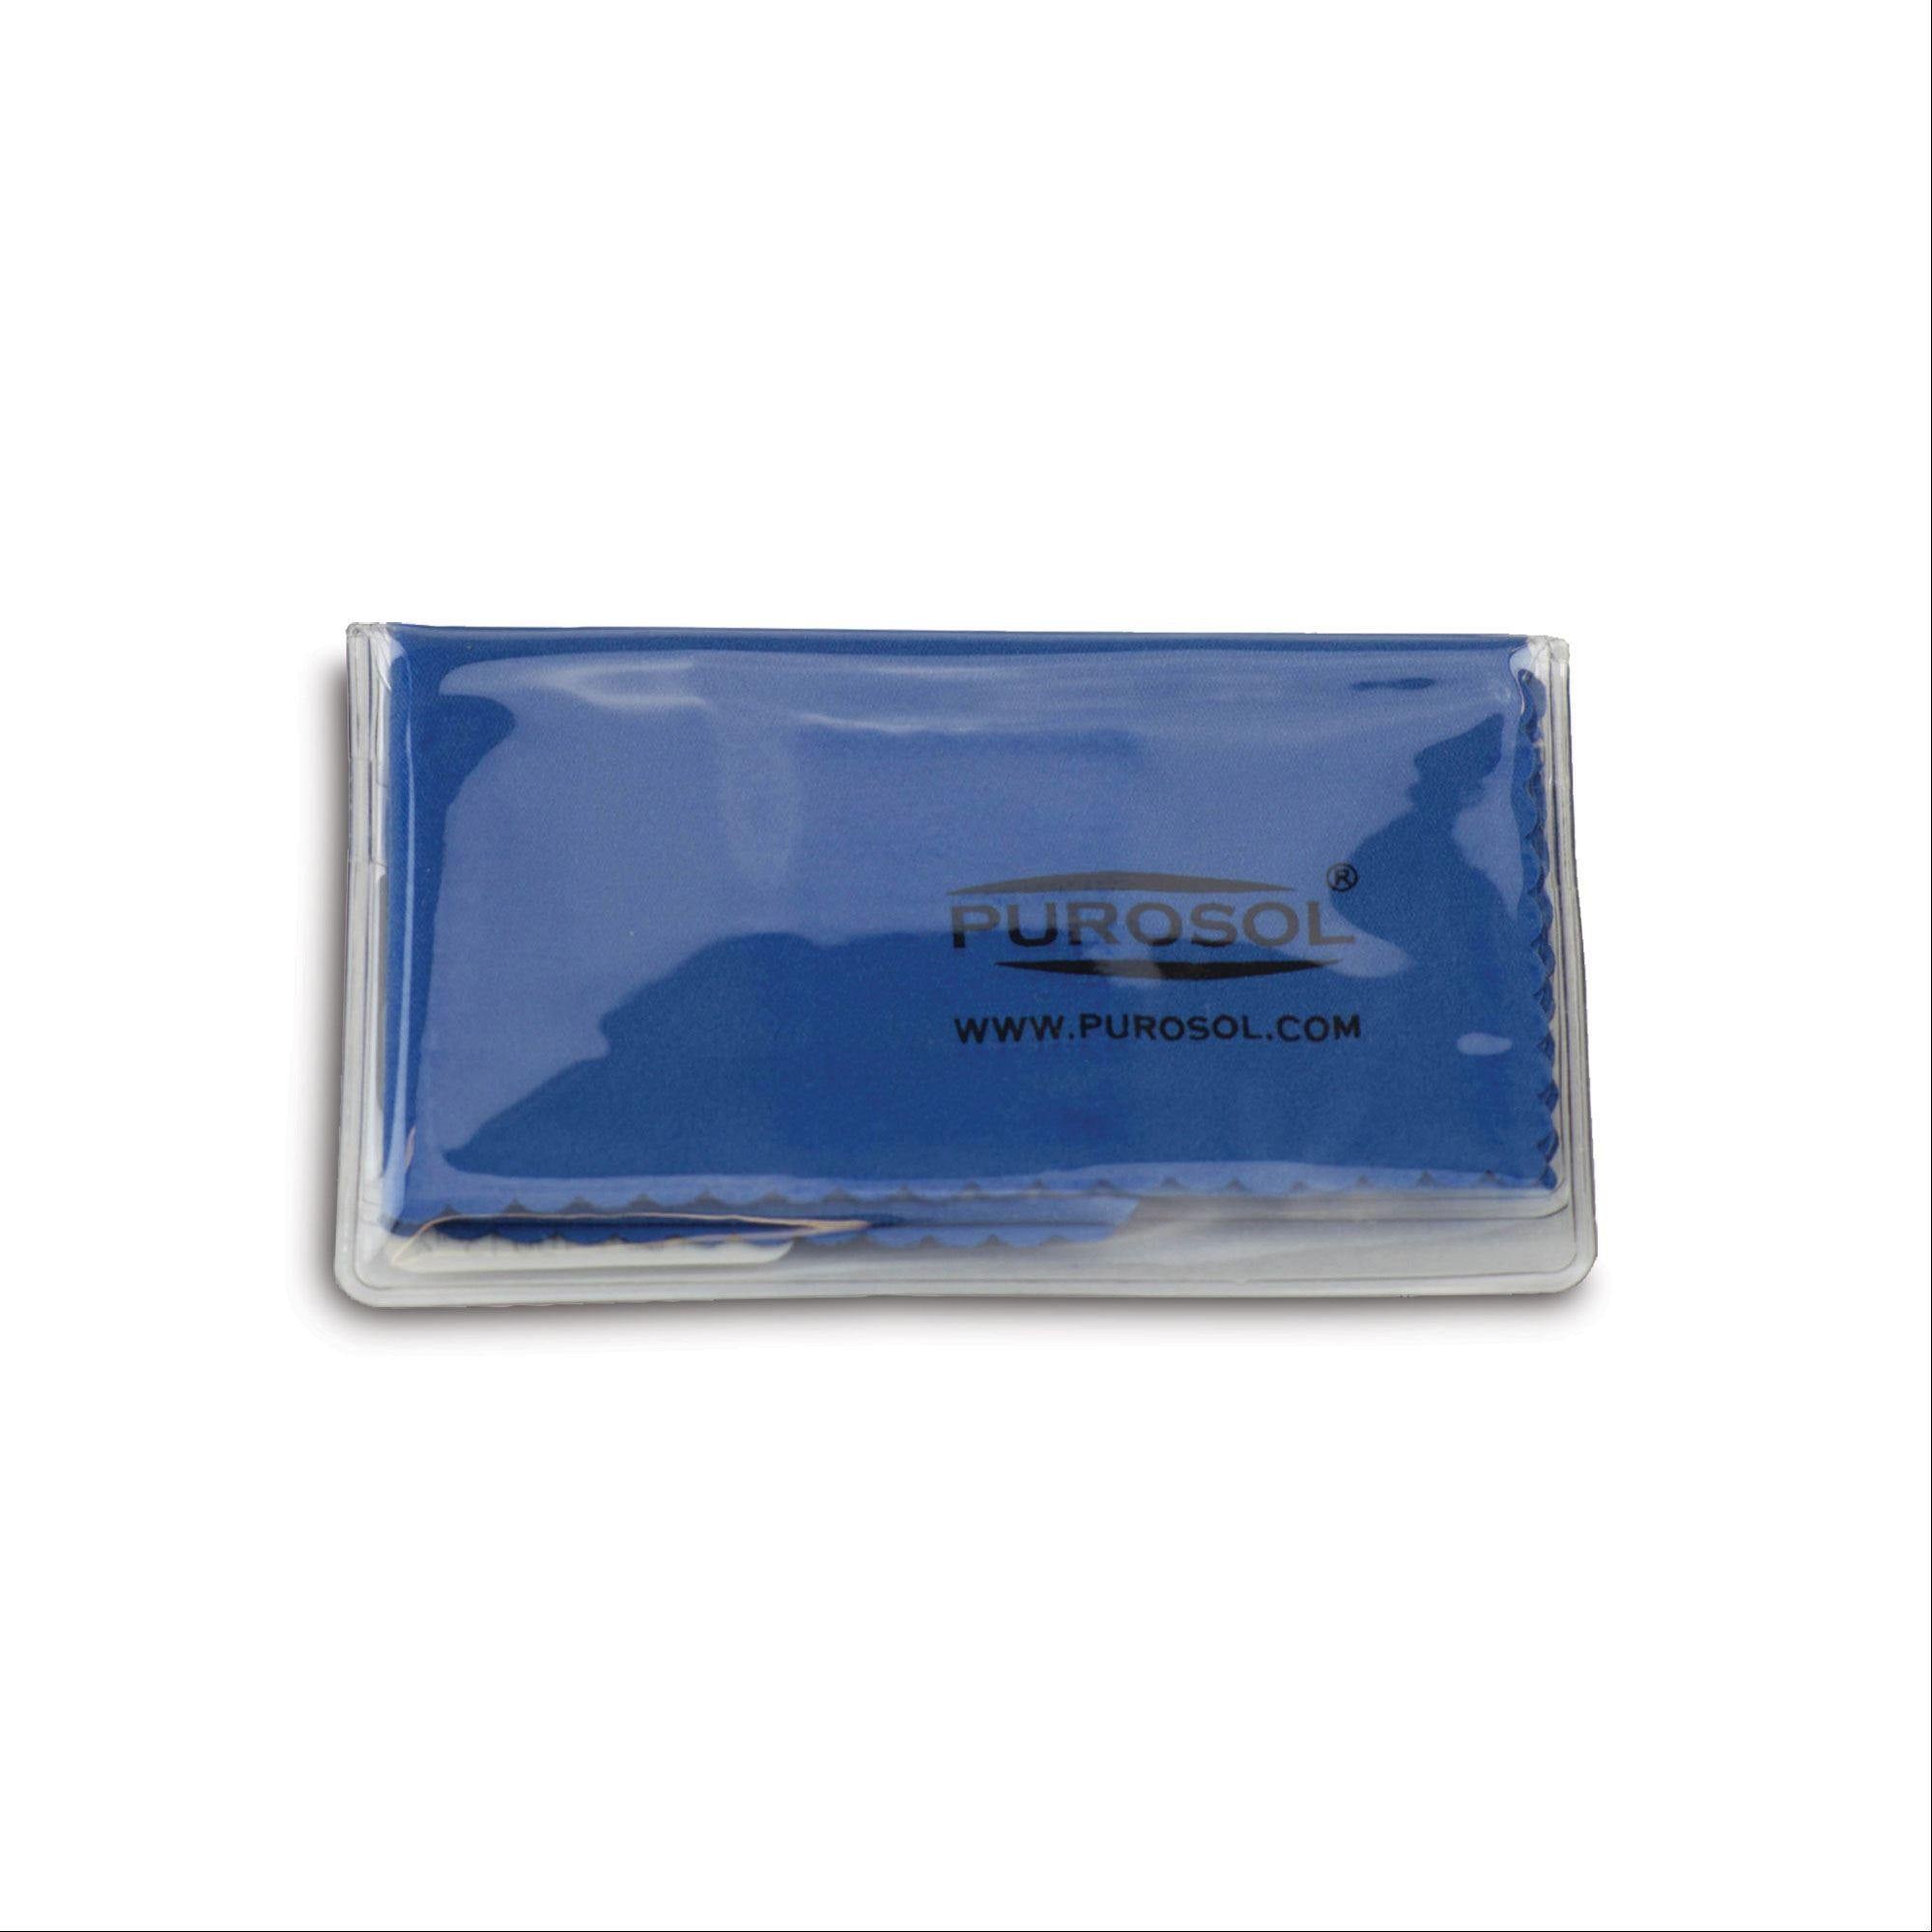 Purosol Microfiber Cloth 12" x 16" ,1 Each - Axiom Medical Supplies